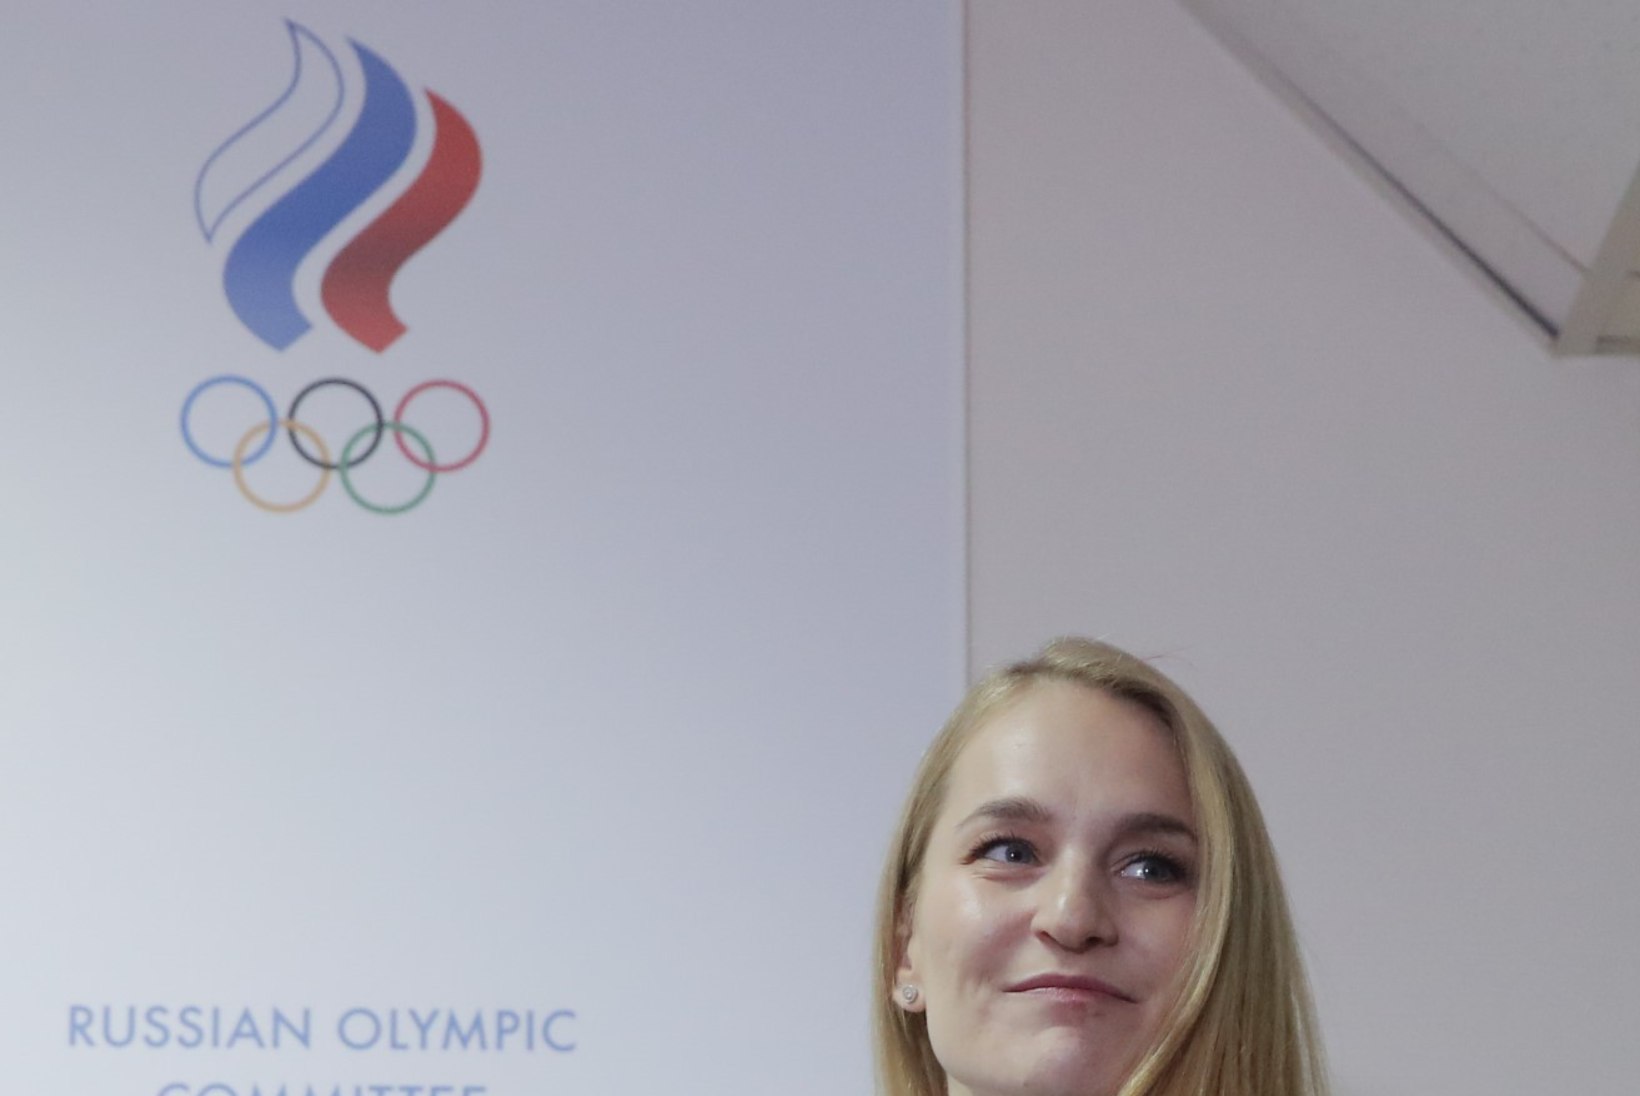 Venemaa olümpiakomitee esindaja: ükski Venemaa sportlane pole olümpiamängudest loobunud